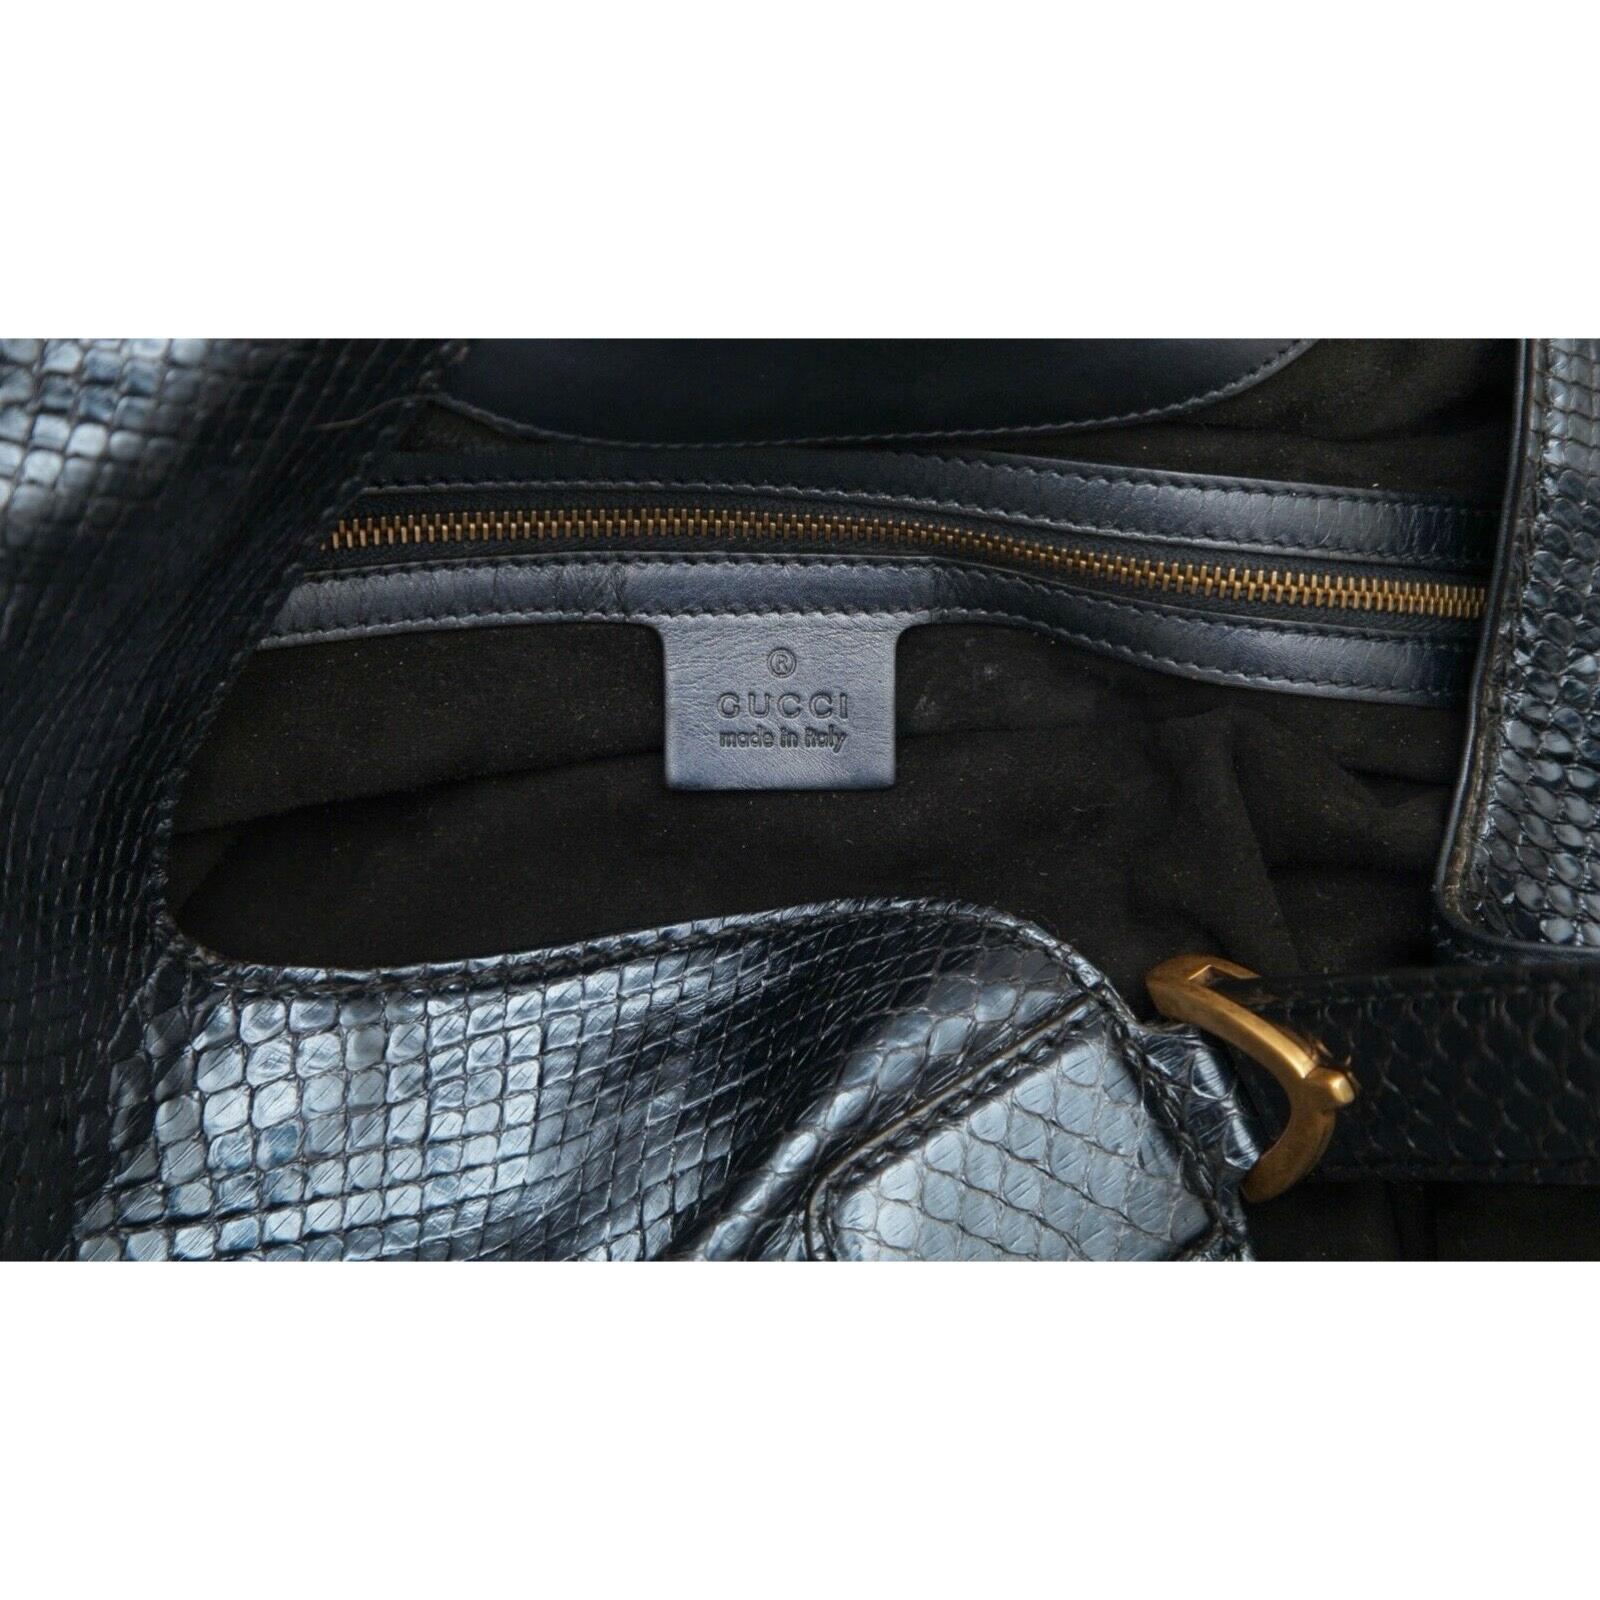 GUCCI Shoulder Bag STIRRUP Exotic Leather Snakeskin Horsebit Blue Navy Gold HW 3